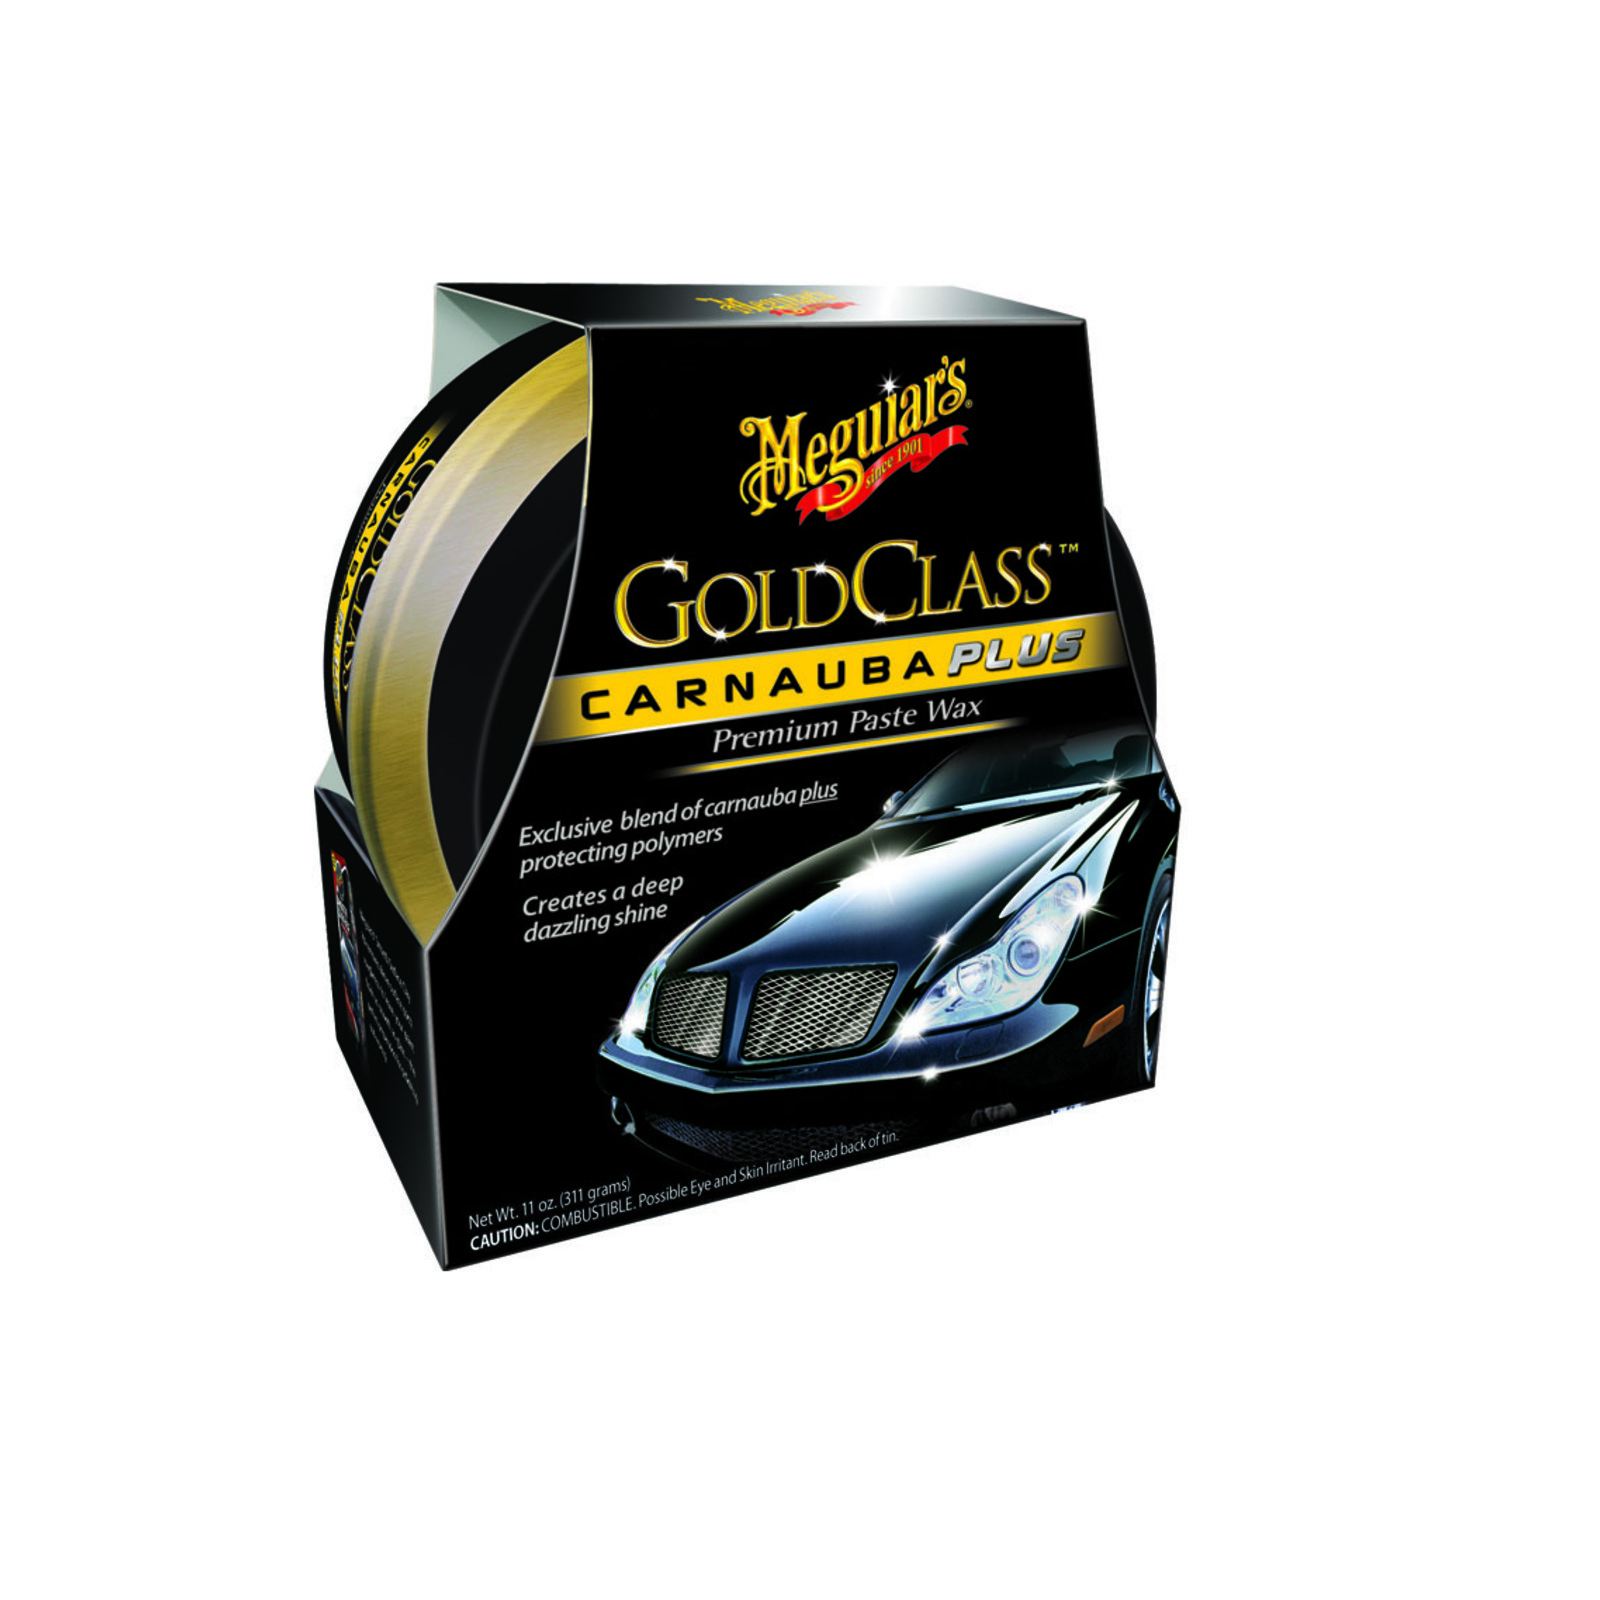 Meguiars Gold Class Carnauba Plus Premium Wax Paste 311g Lackpolitur